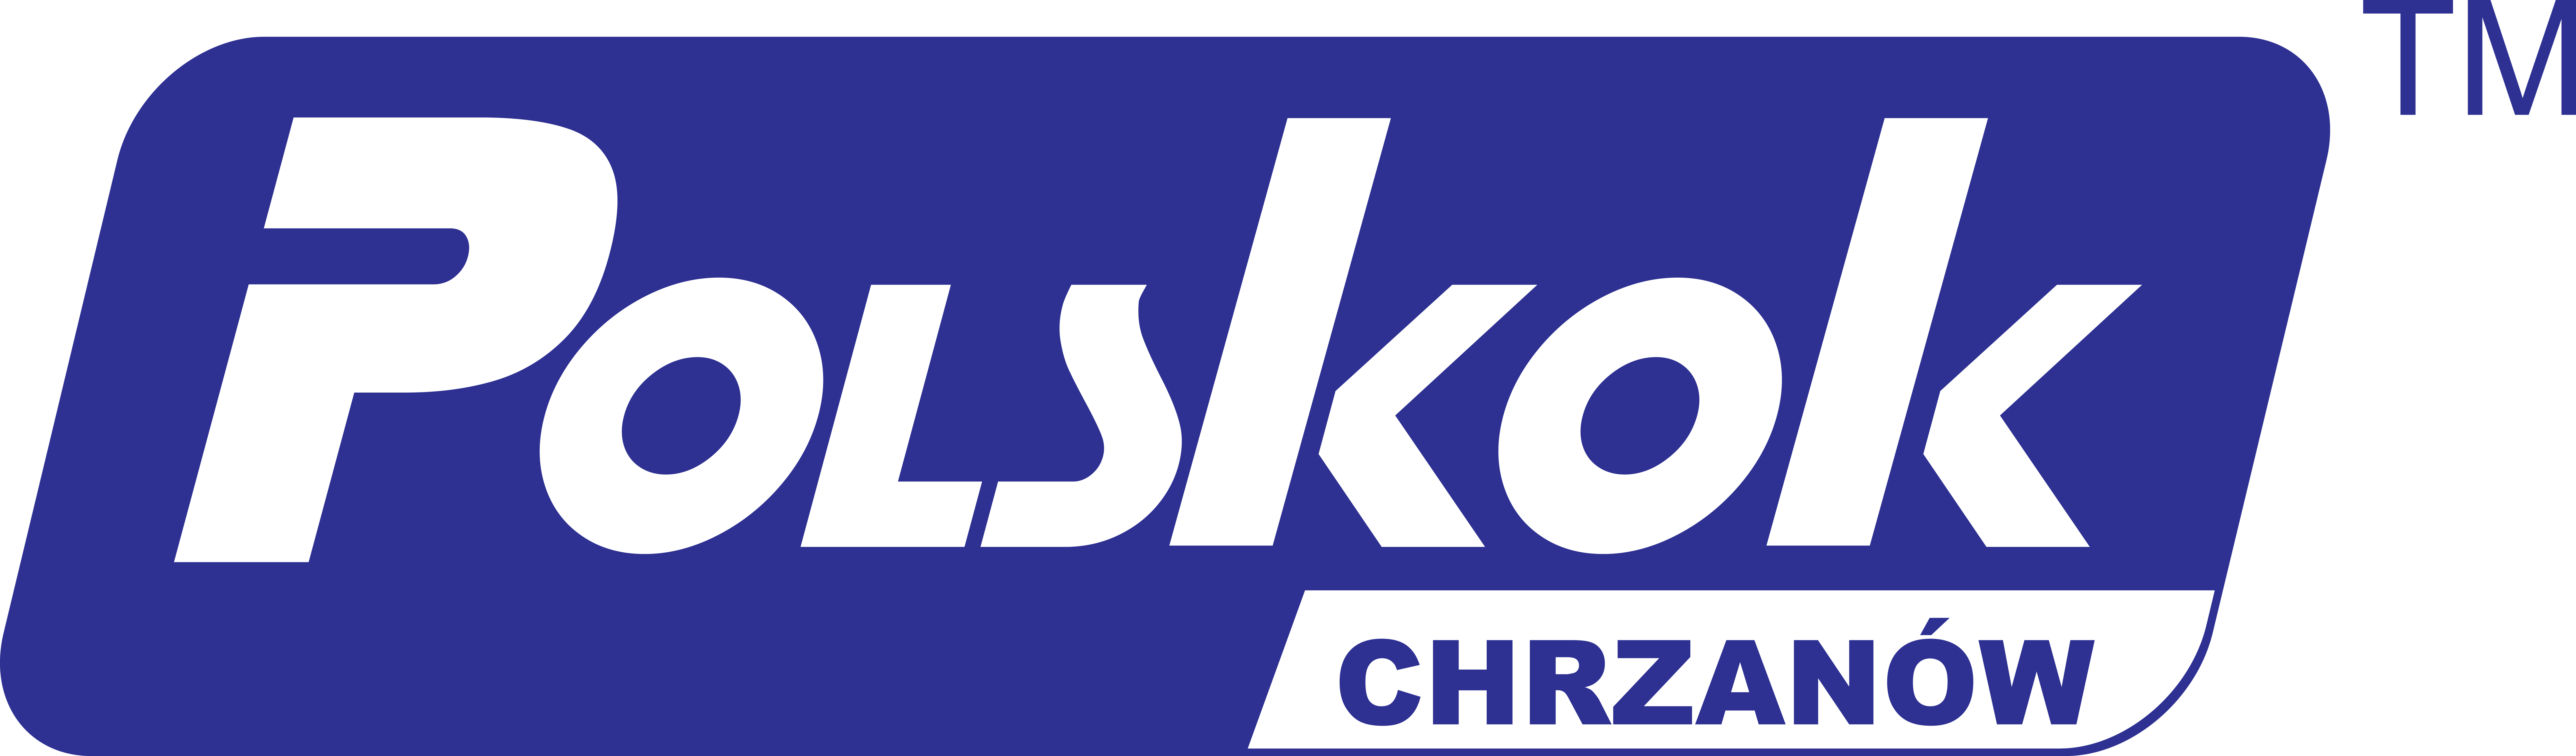 Polskok Chrzanów - logo